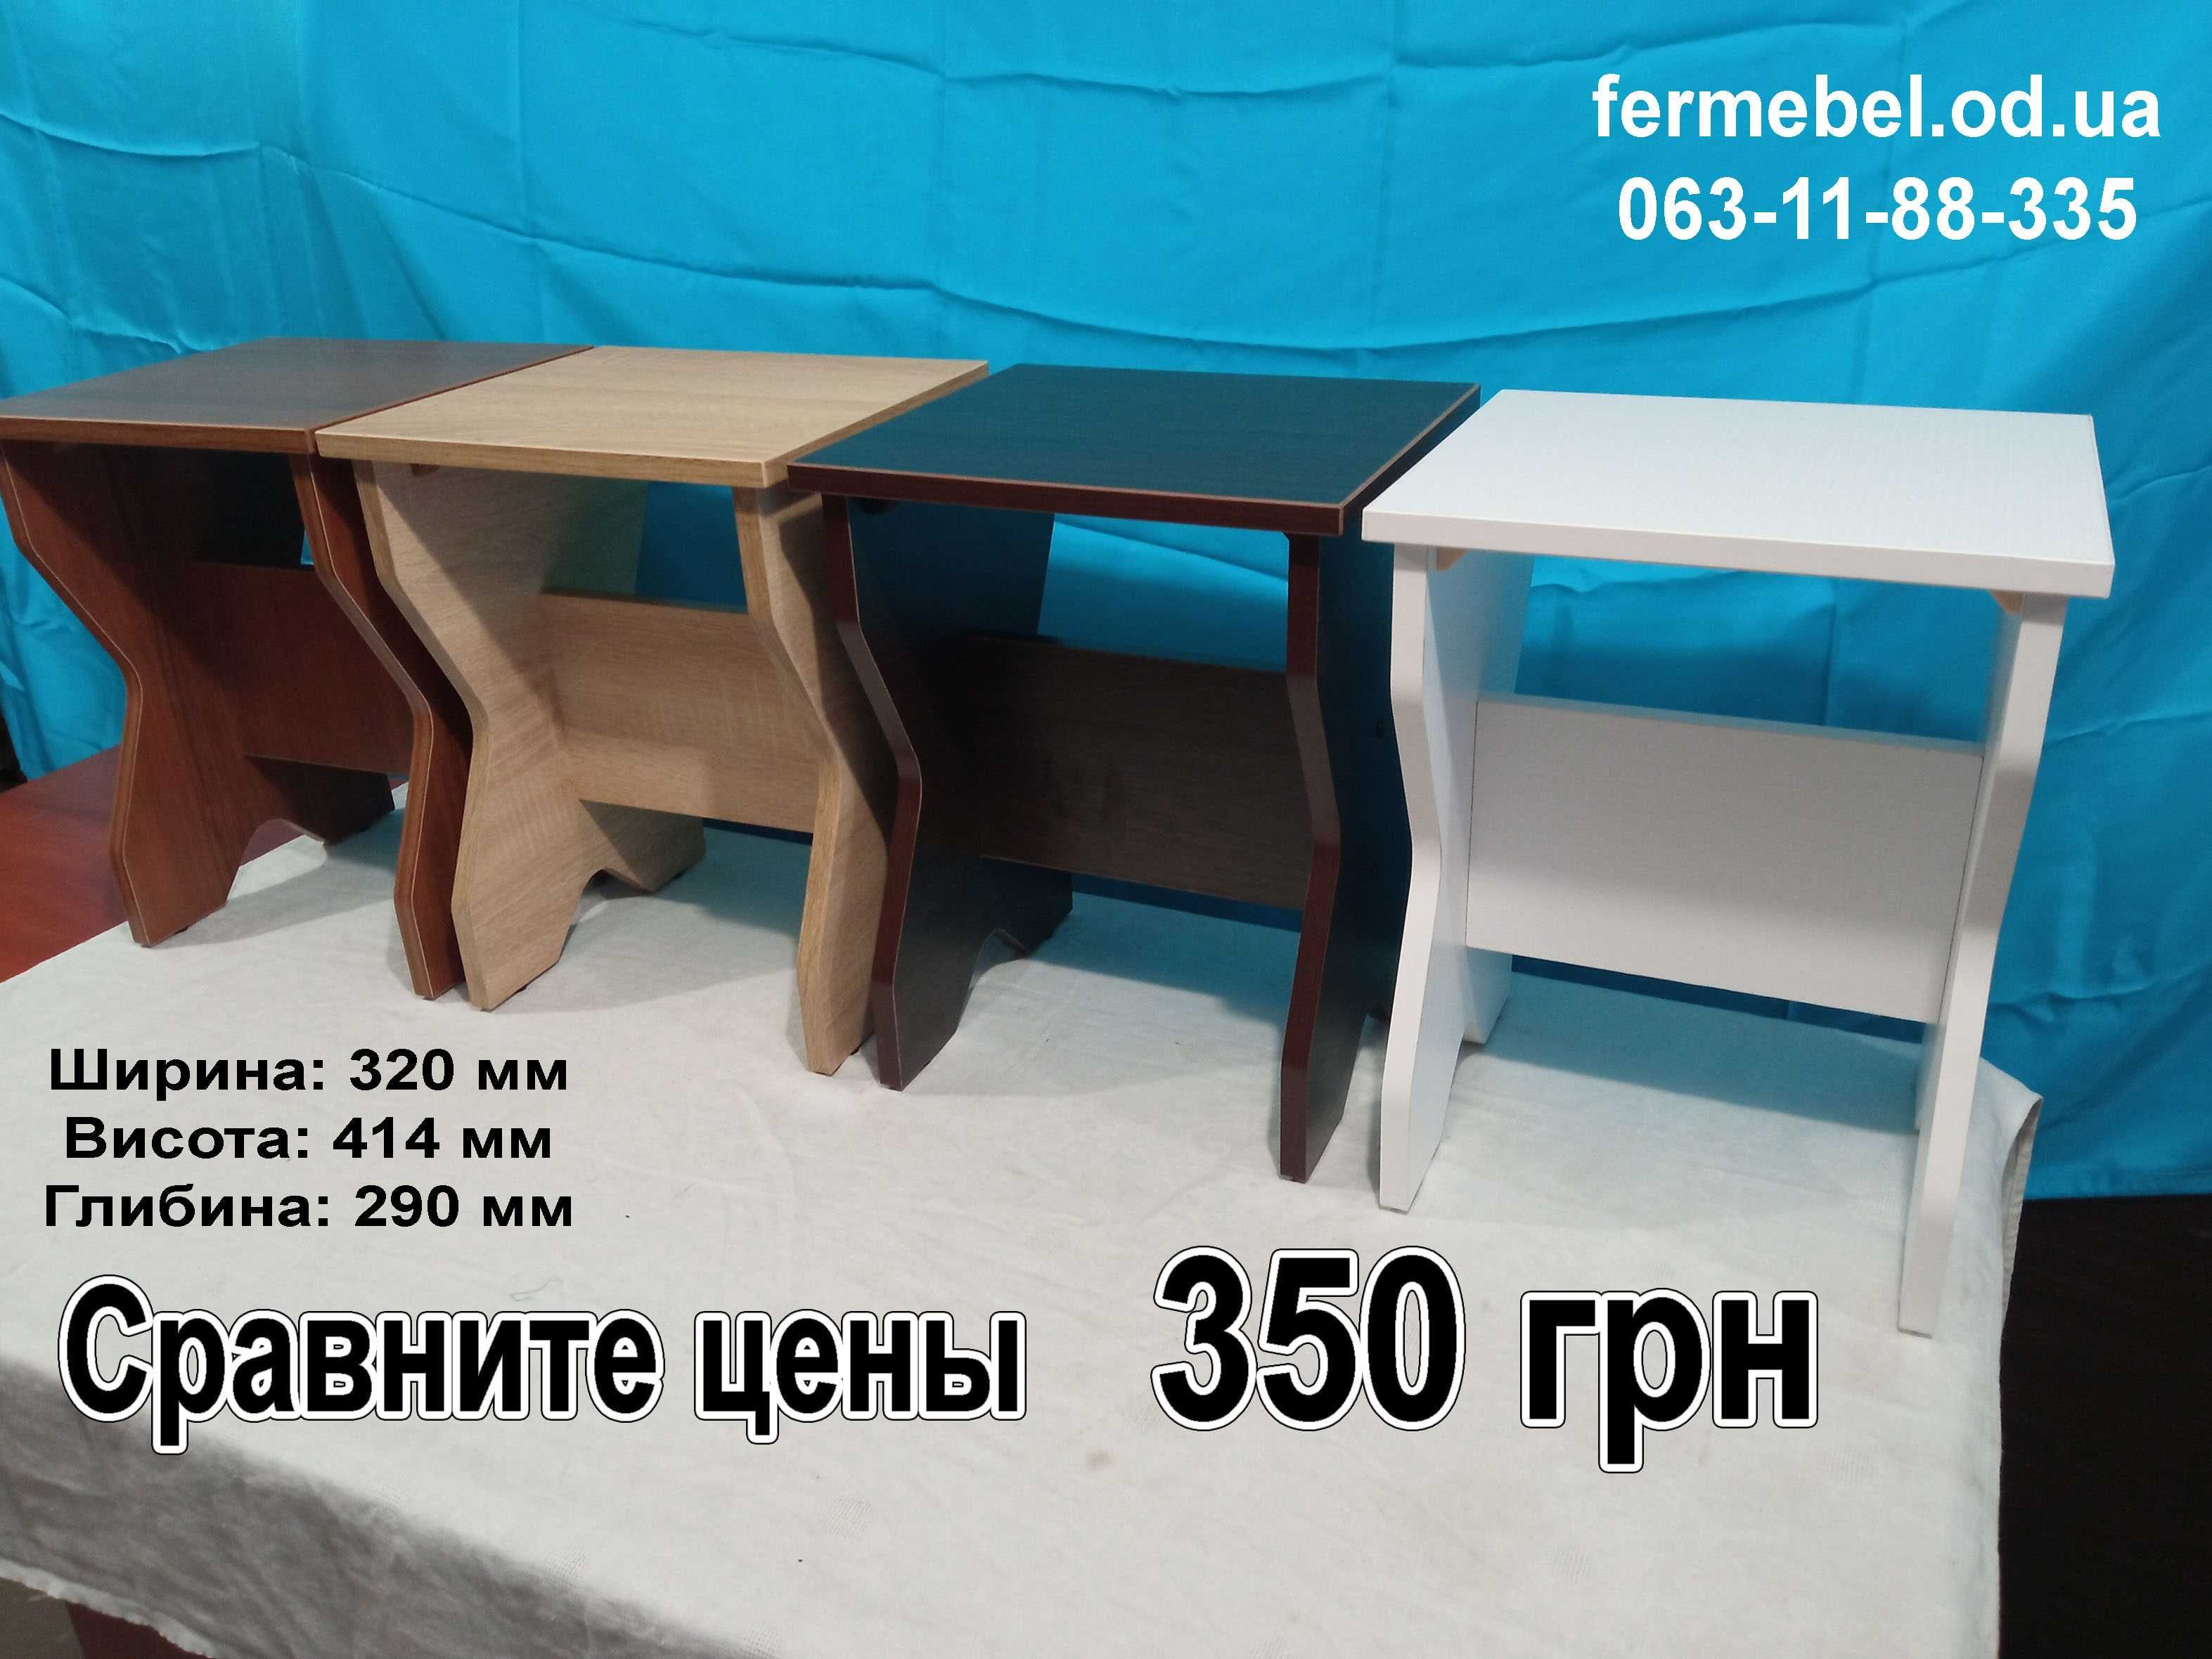 Стол для кухни КС хром  Фер мебель  в наличии сравните цены